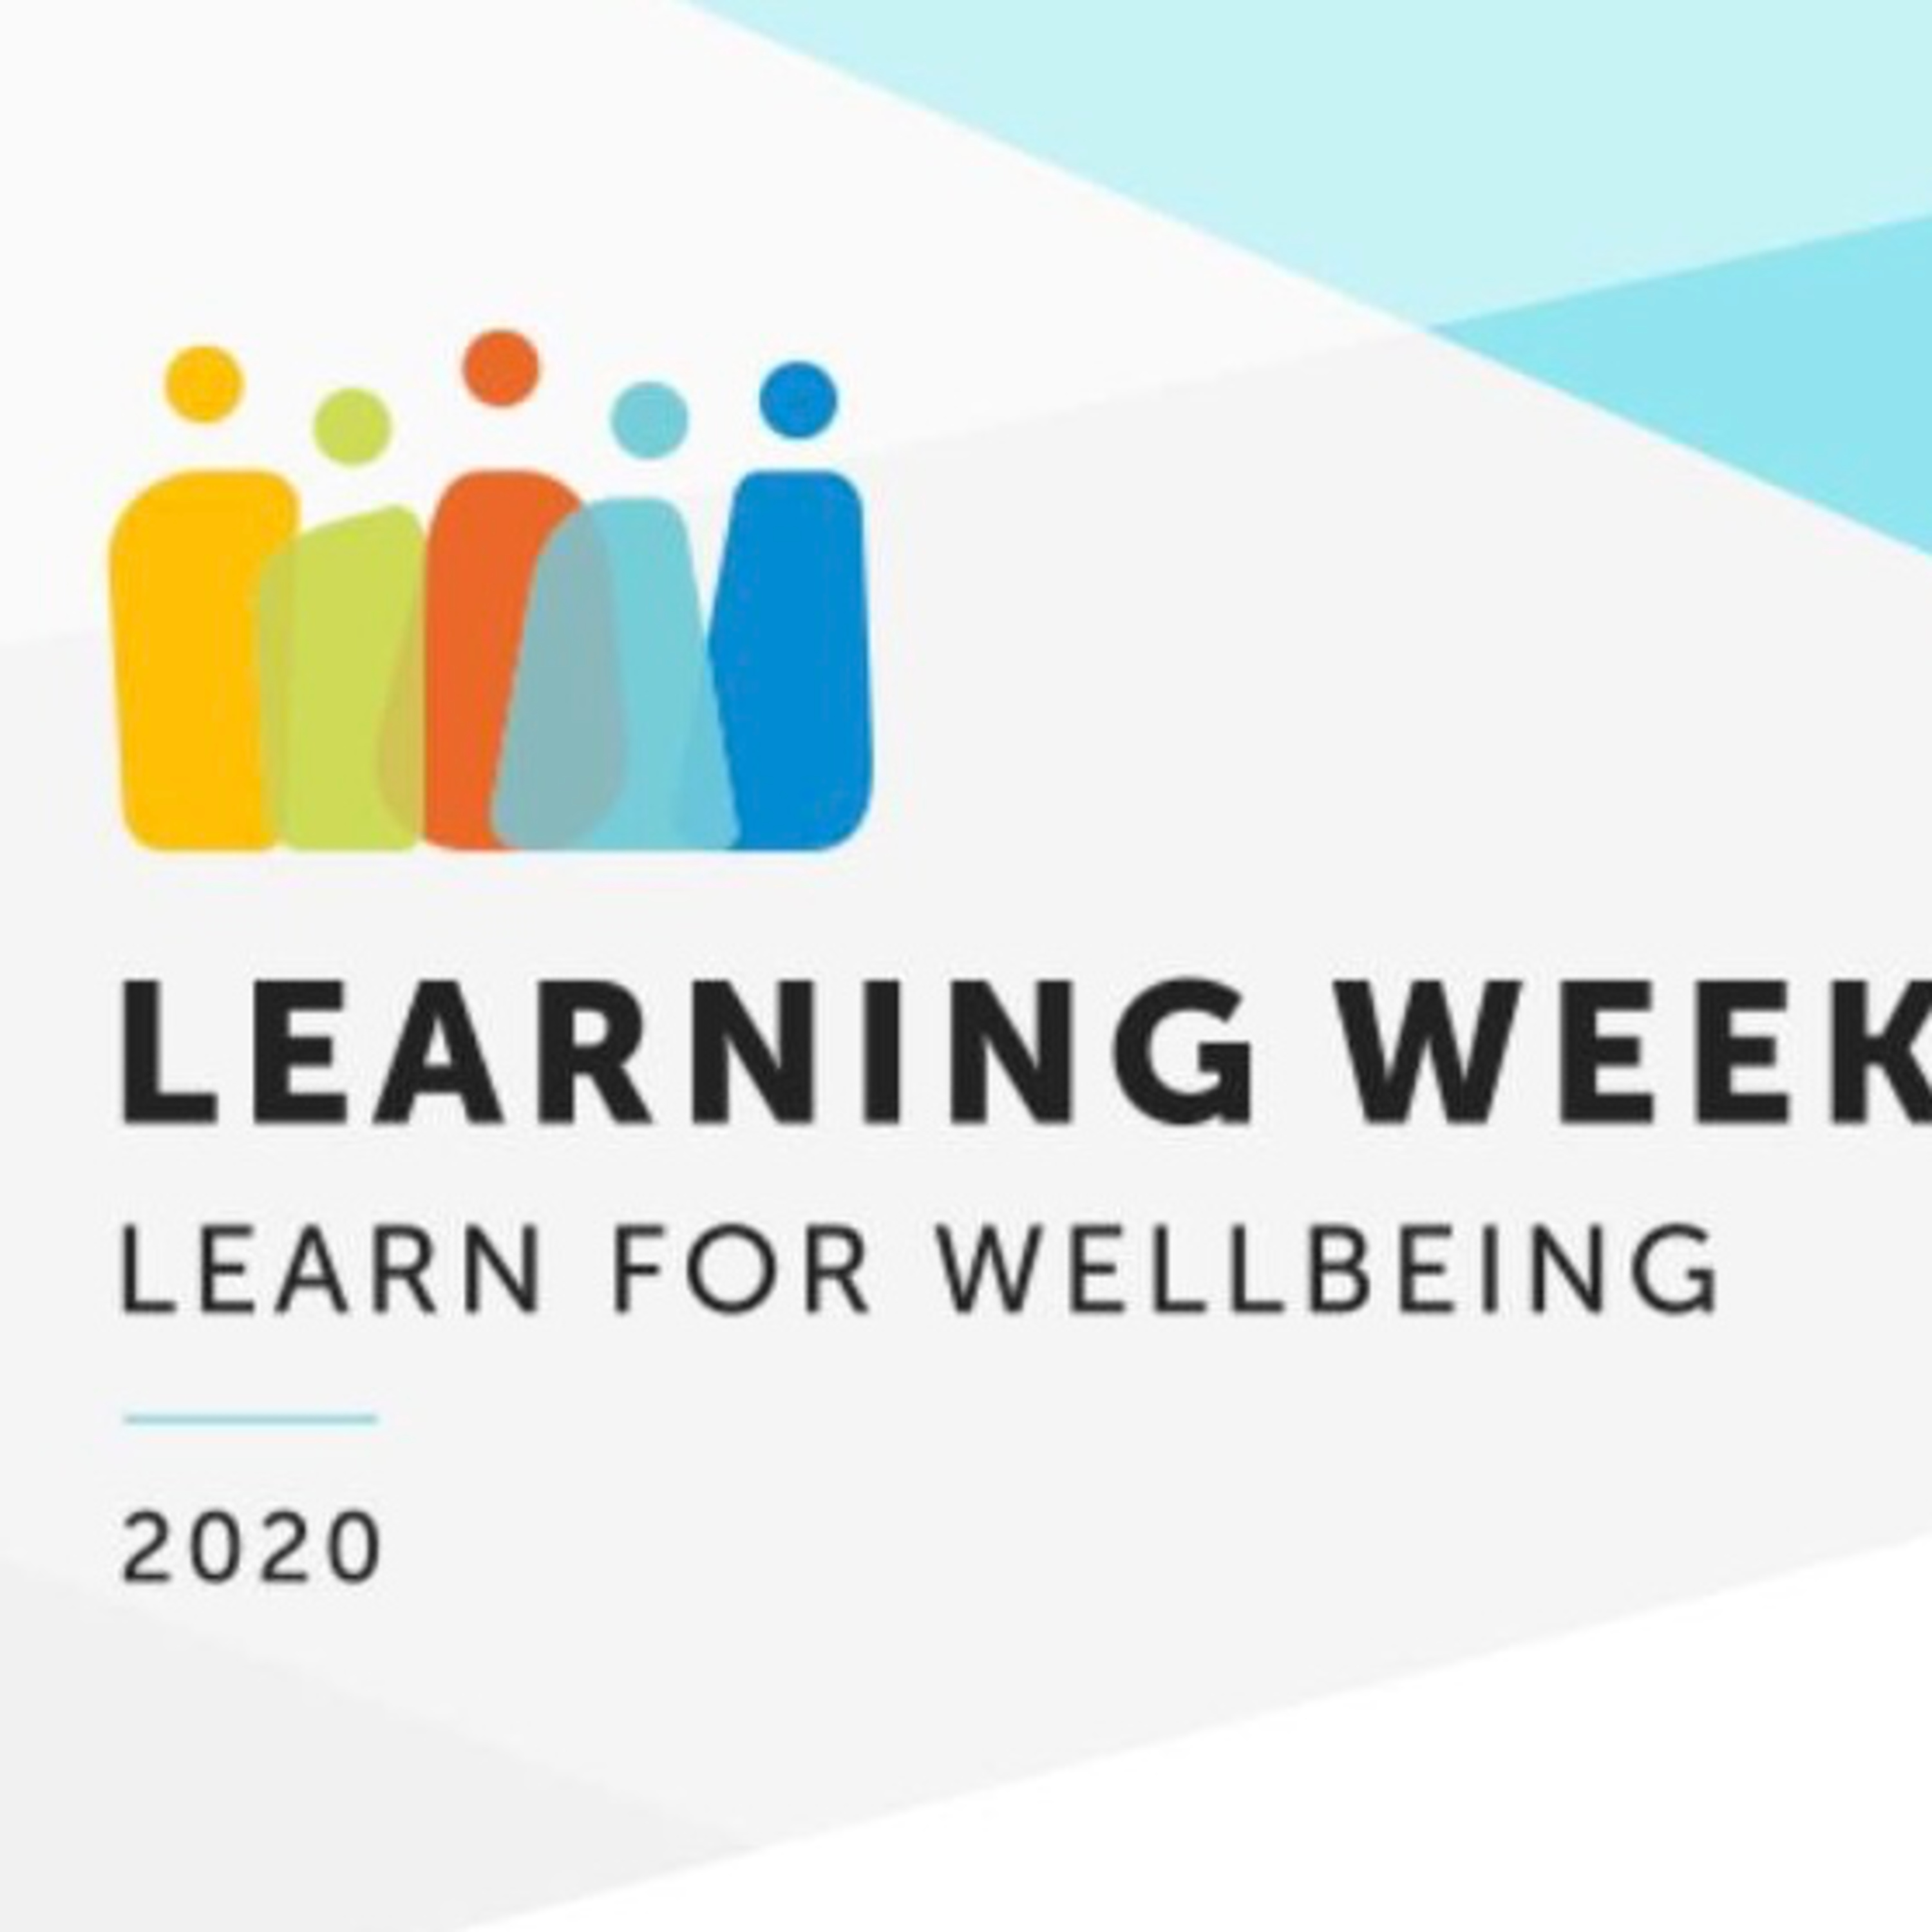 Azonnal hasznosítható, munkába beépíthető gondolatok a well-being jegyében - EPAM Learning Week 1. rész